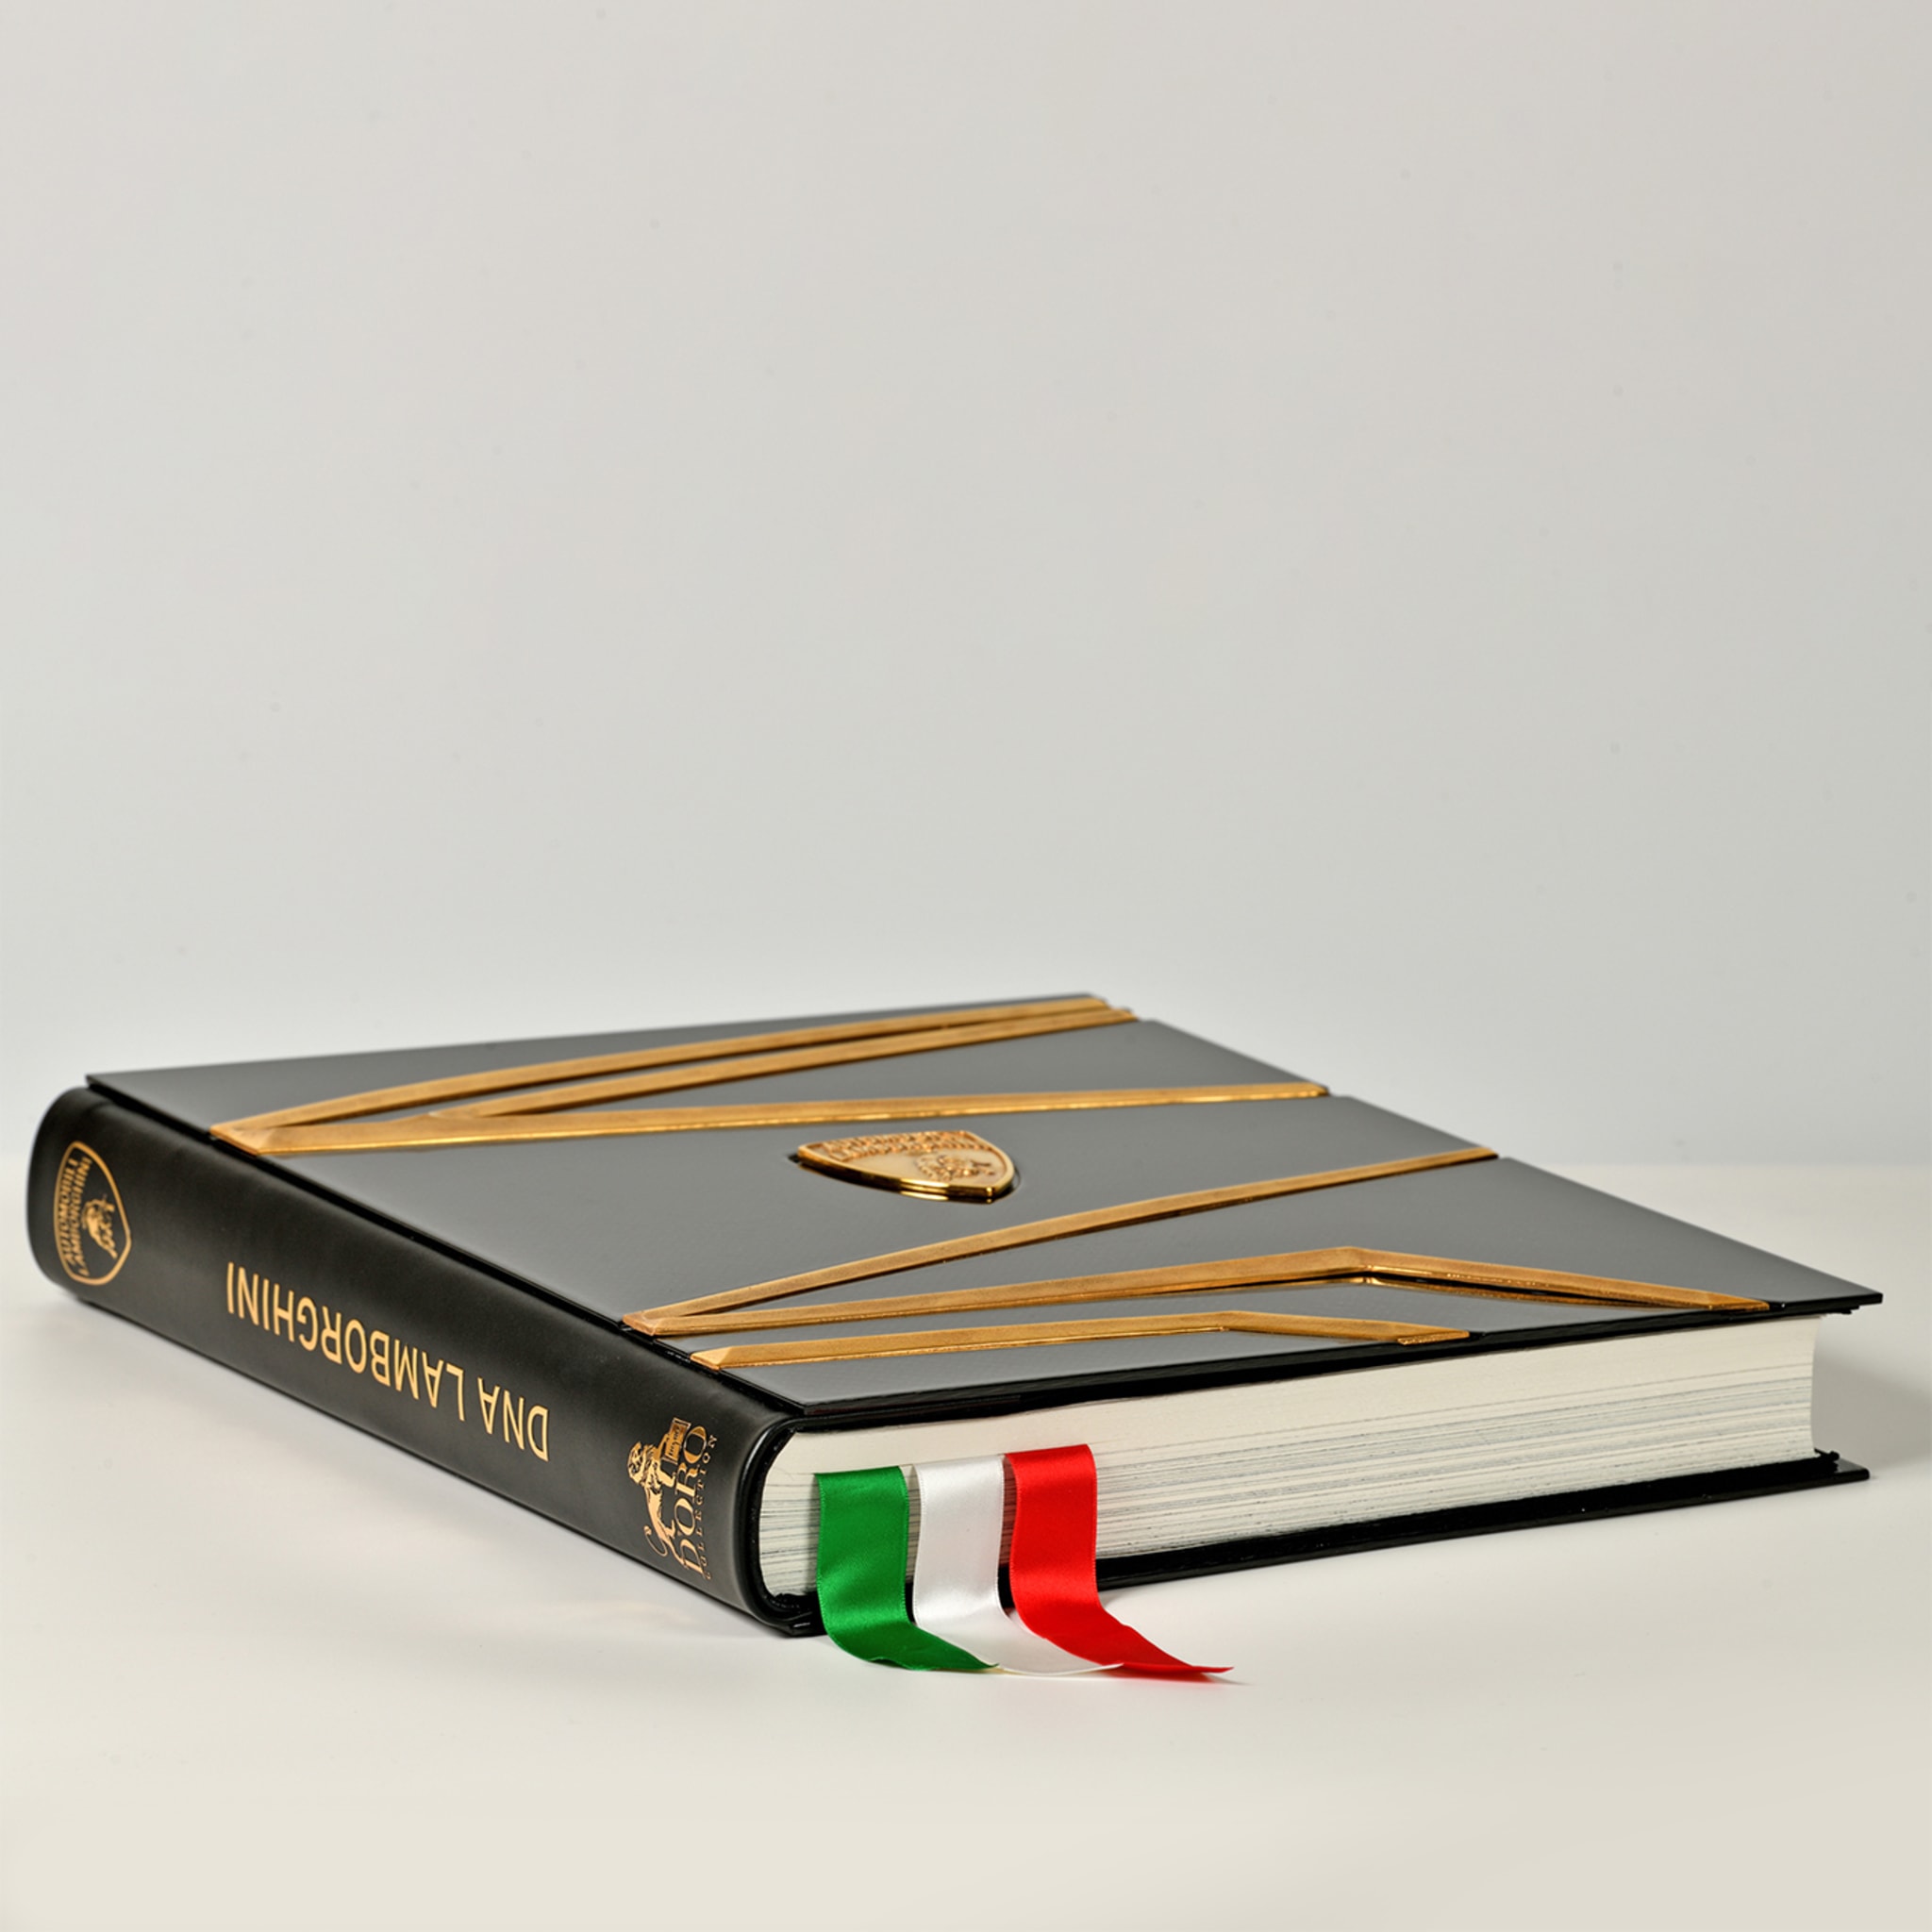 Dna Lamborghini II Edition Book - Alternative view 4